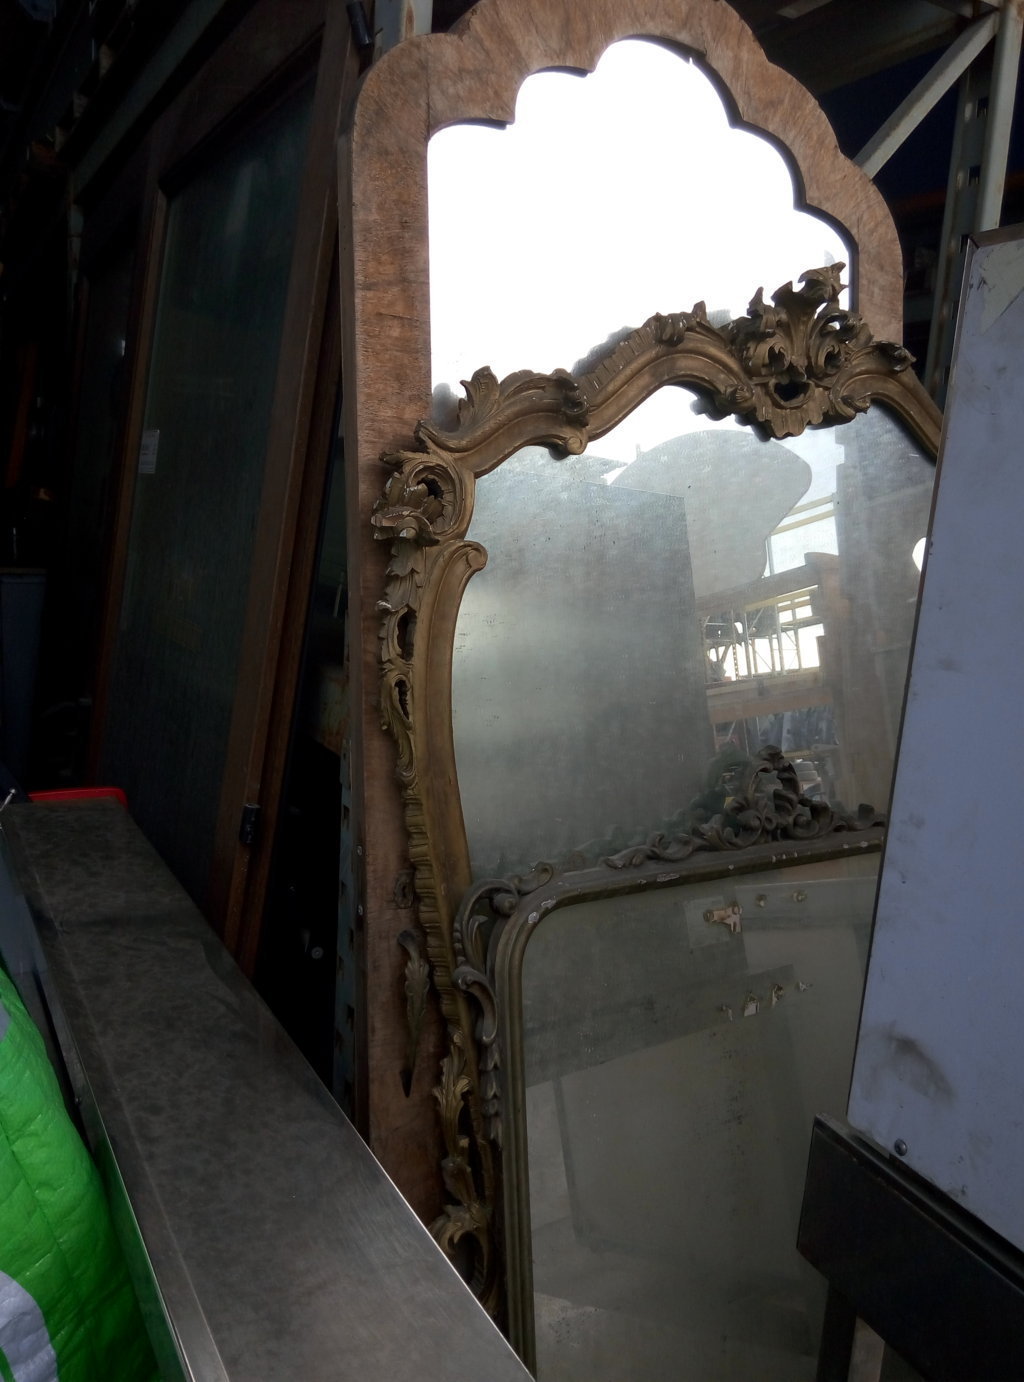 Specchi, oggetti di antiquariato in legno con rifiniture | oggetti epoca | arredo | Pomili Demolizioni Speciali srl